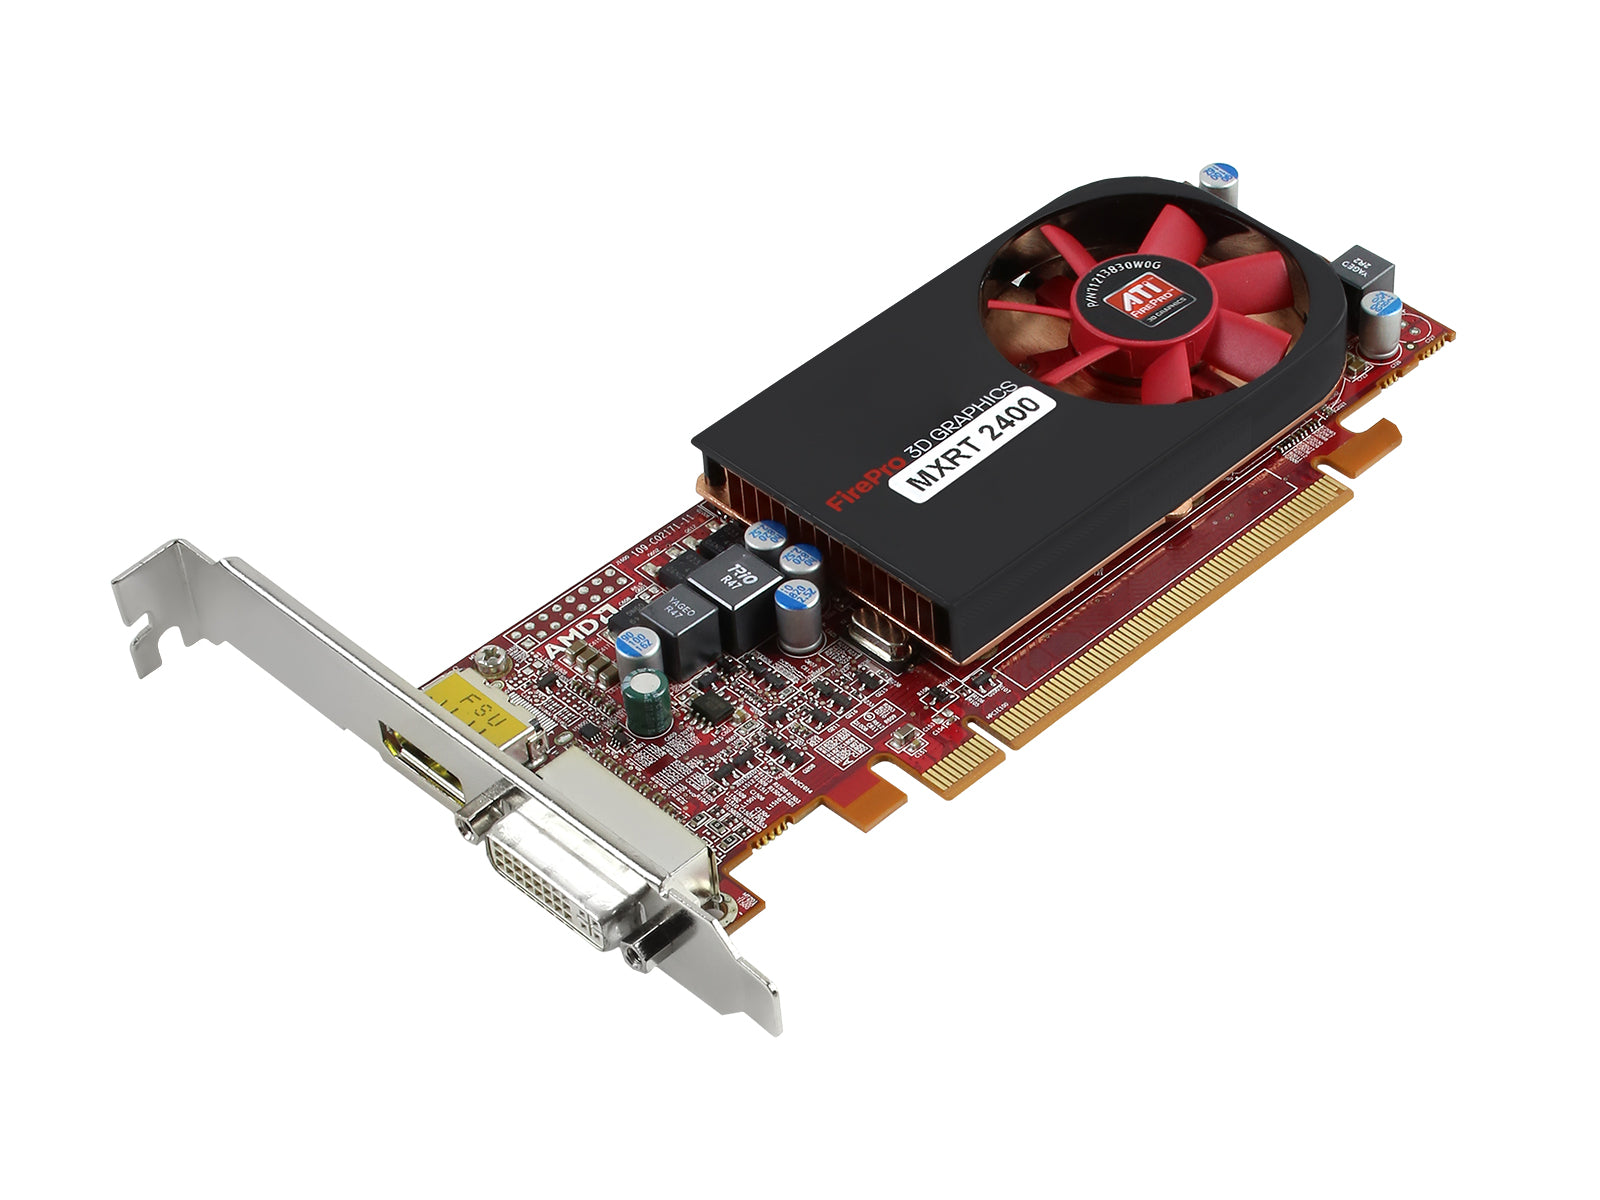 Barco Tarjeta gráfica PCIe MXRT-2400 de 512 MB (K9305035) Monitors.com